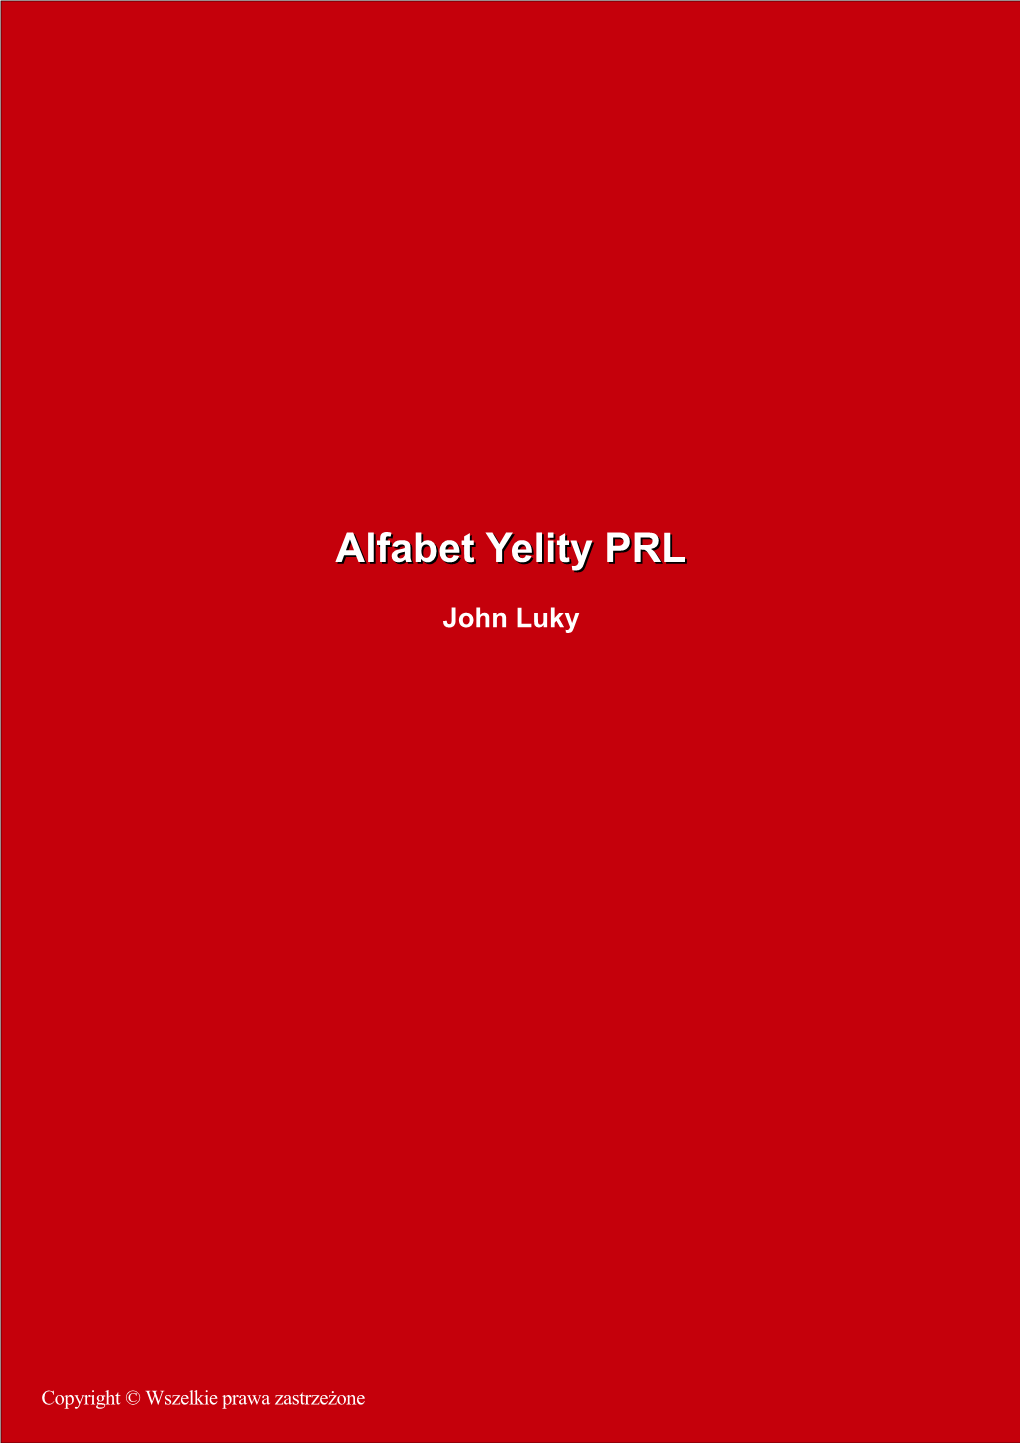 Alfabet Yelity PRL” 1